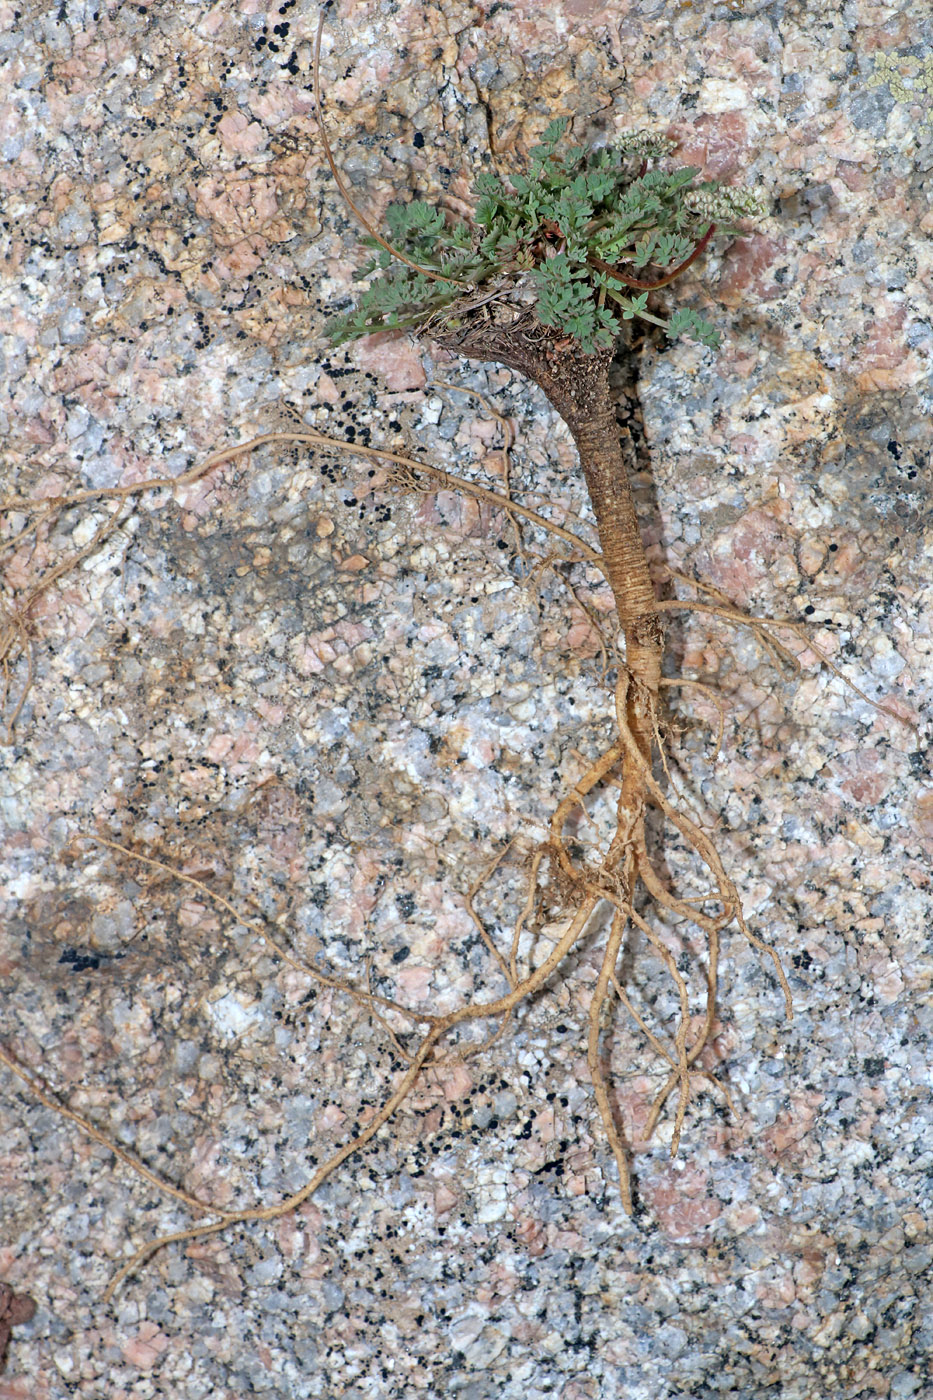 Image of Lomatocarpa alata specimen.